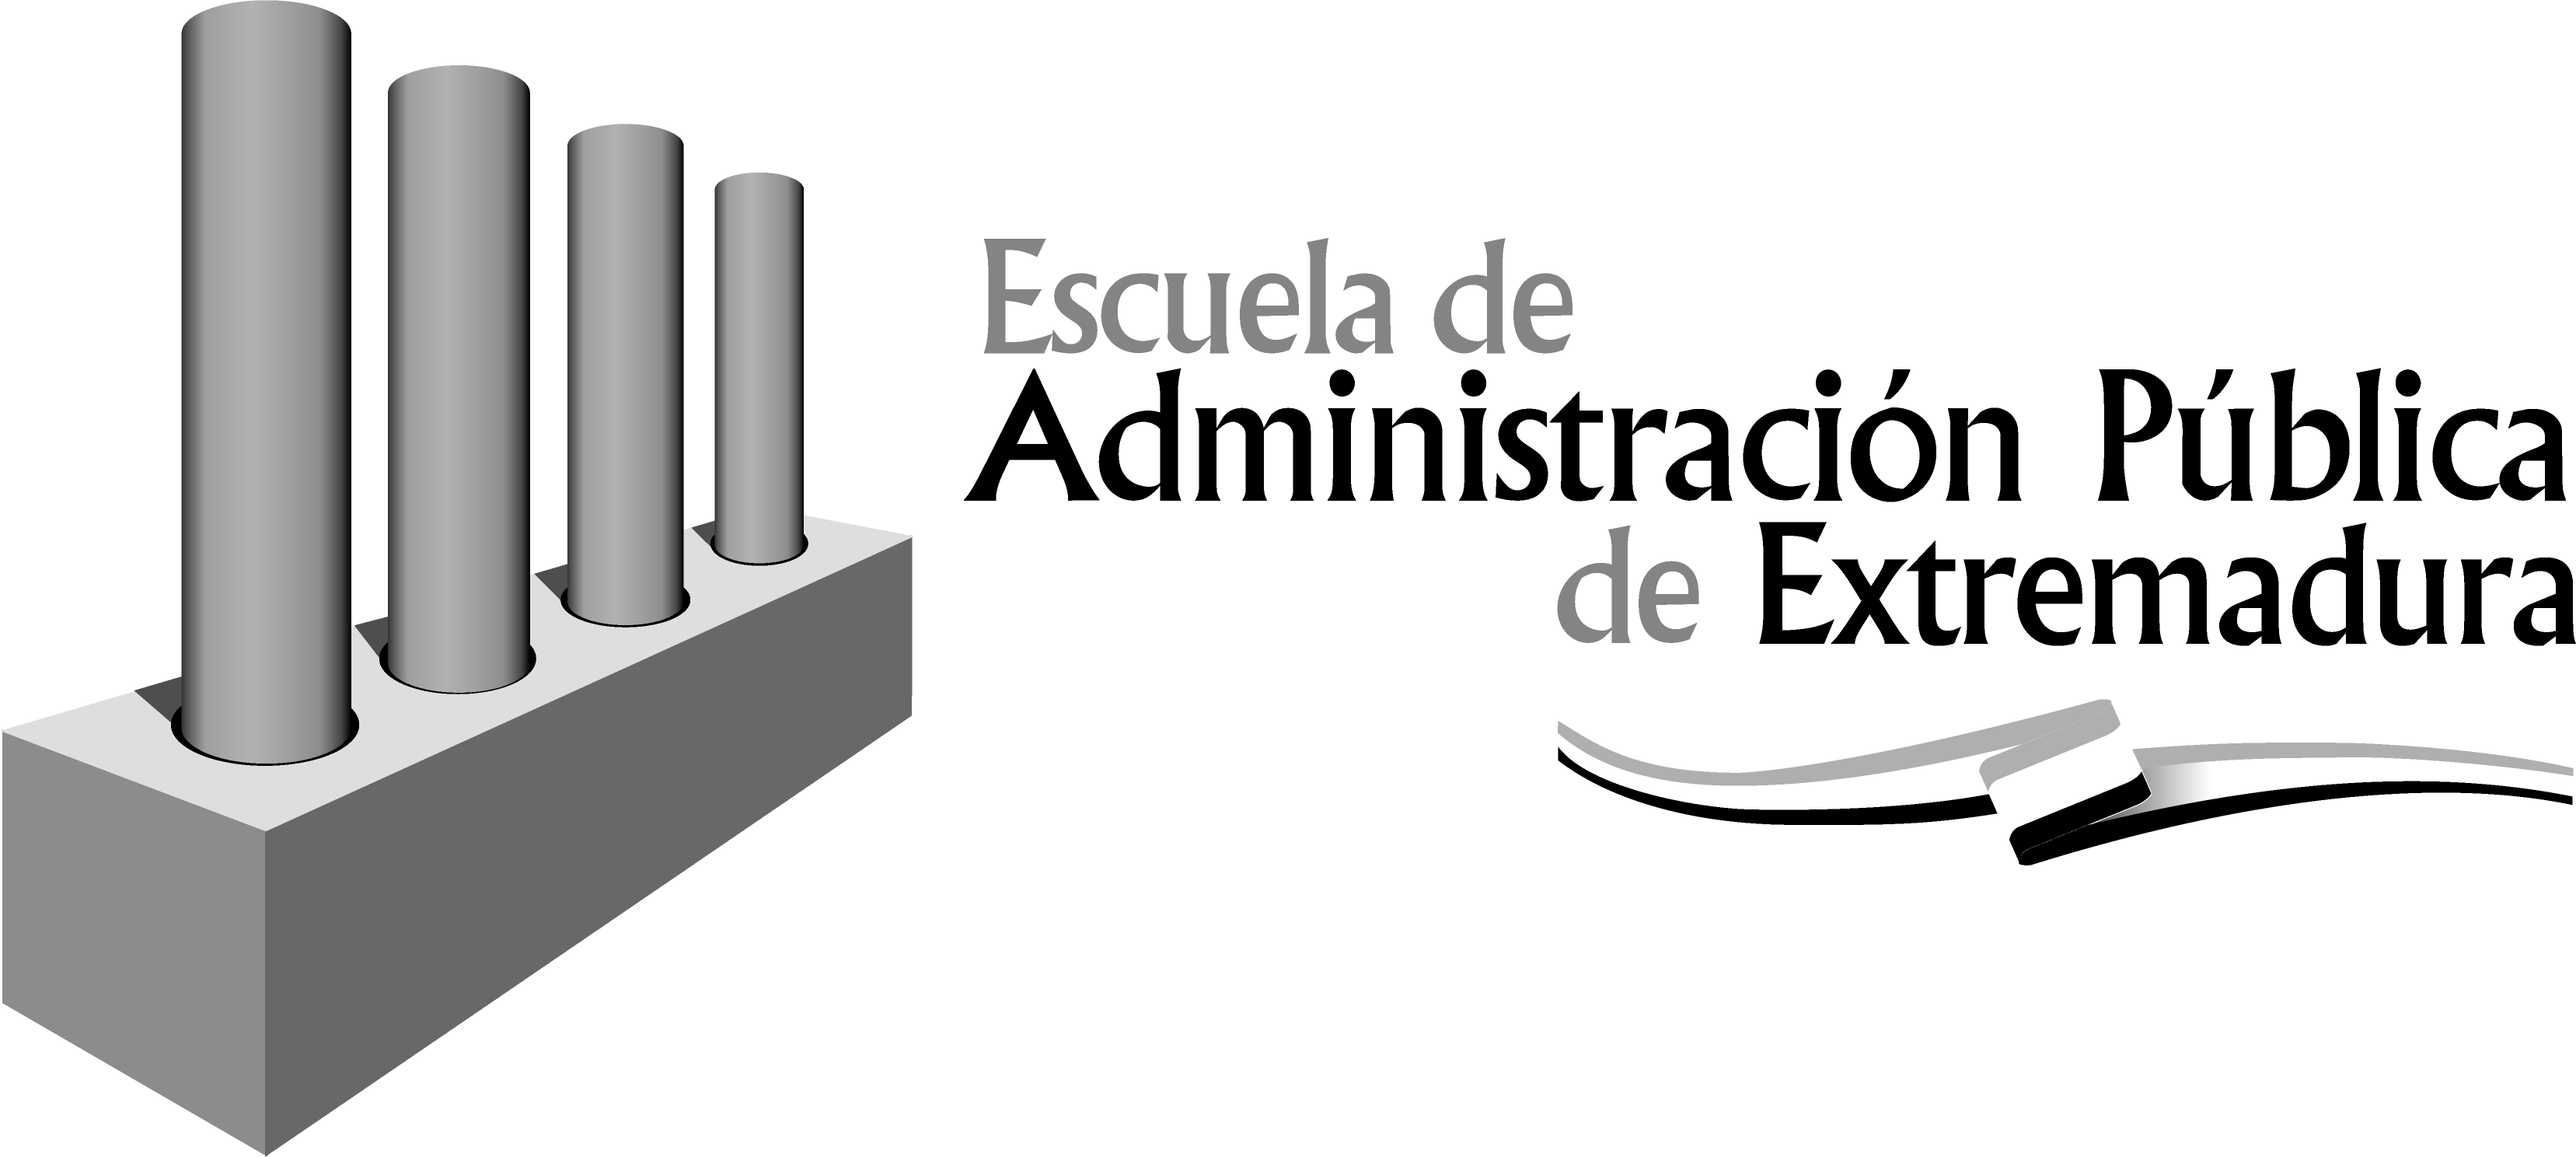 Escuela de Administración Pública de Extremadura